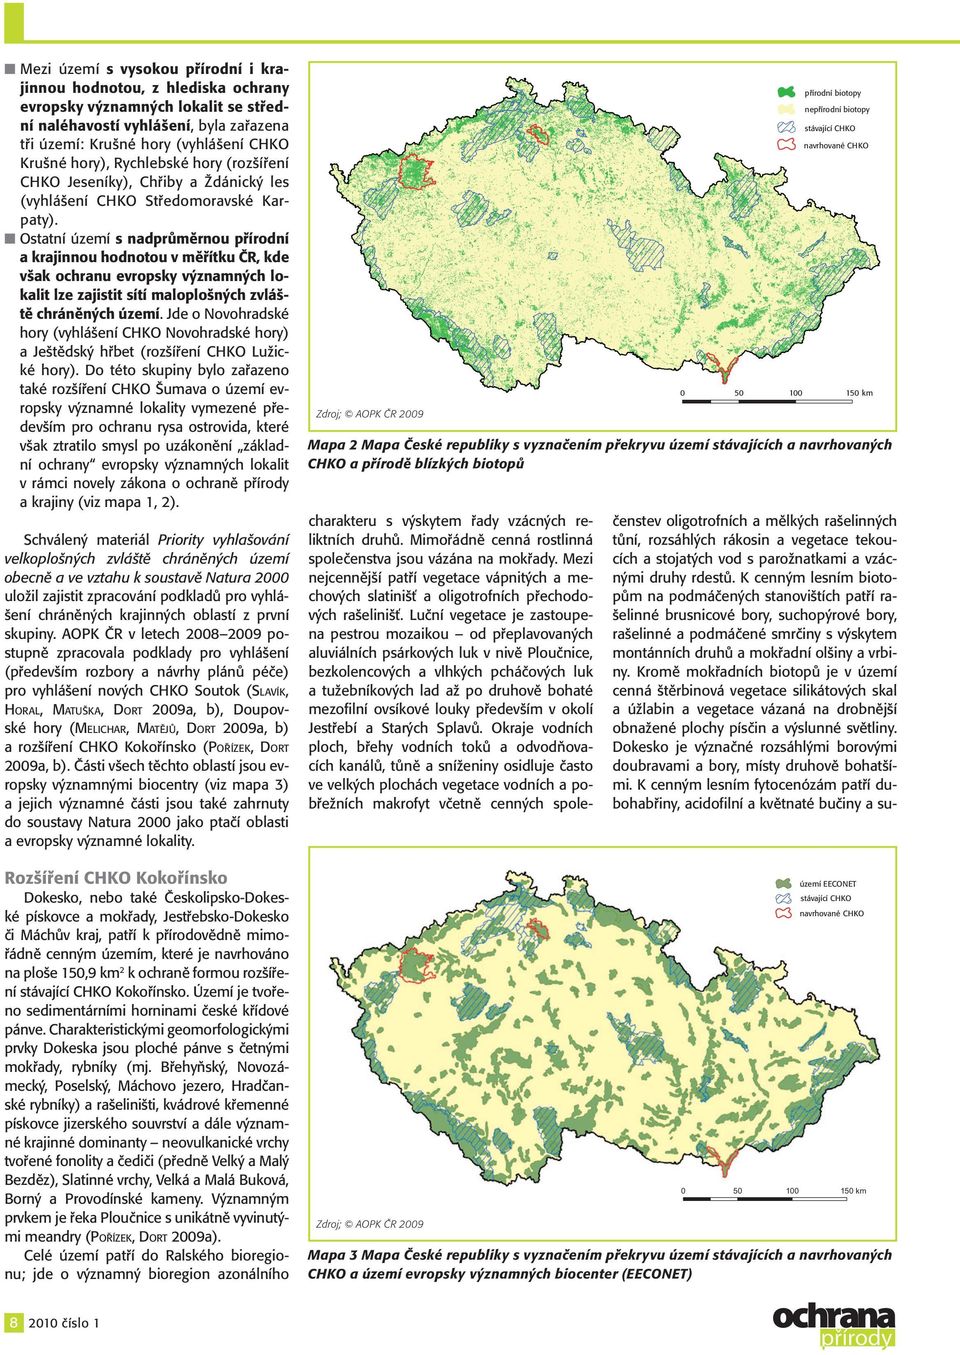 Ostatní území s nadprůměrnou přírodní a krajinnou hodnotou v měřítku ČR, kde však ochranu evropsky významných lokalit lze zajistit sítí maloplošných zvláště chráněných území.